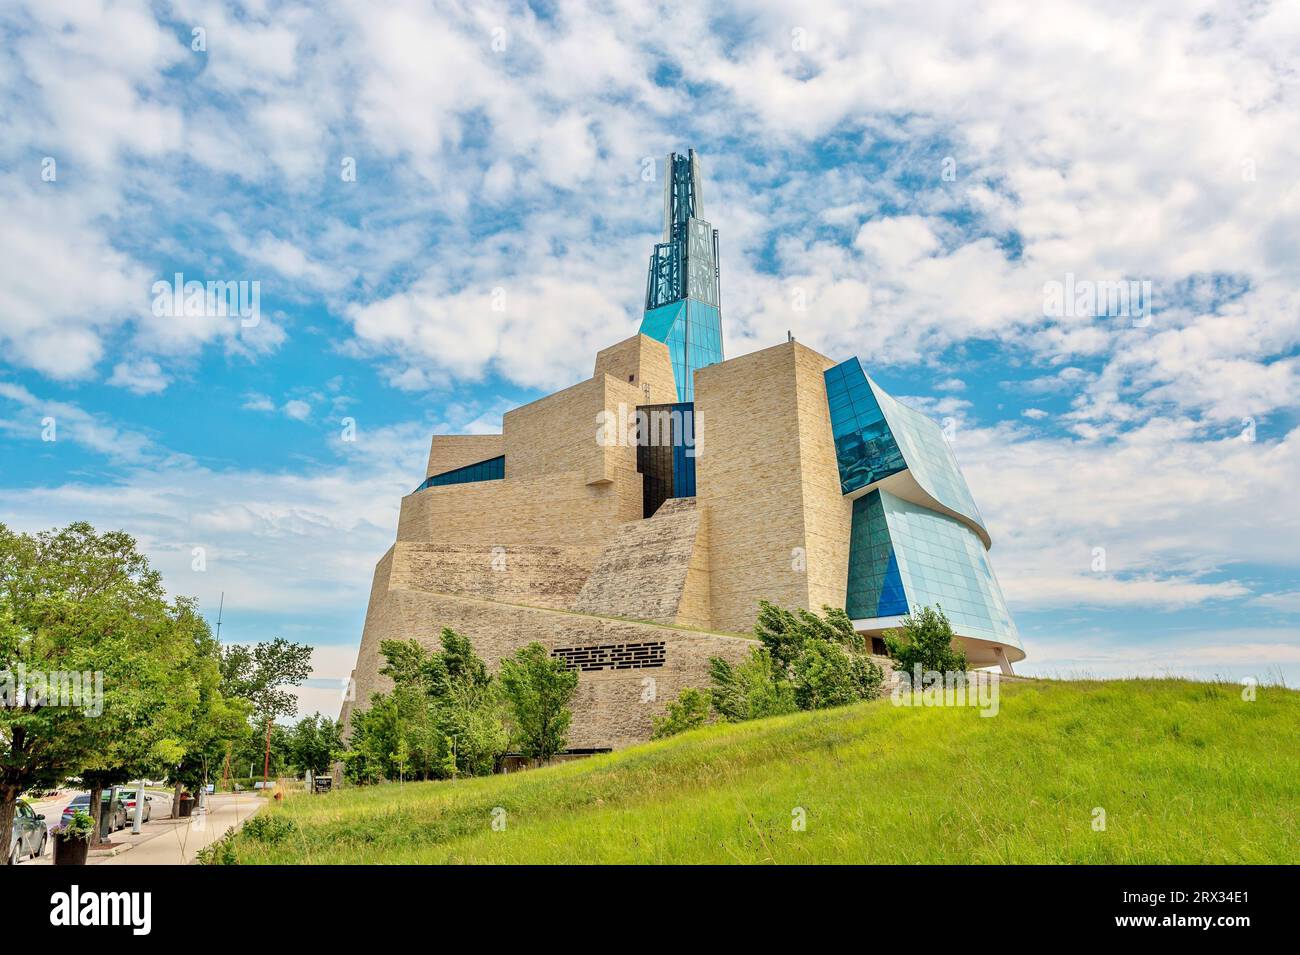 Le Musée canadien des droits de la personne, ouvert en 2014, a remporté des prix pour son architecture, Winnipeg, Manitoba, Canada, Amérique du Nord Banque D'Images